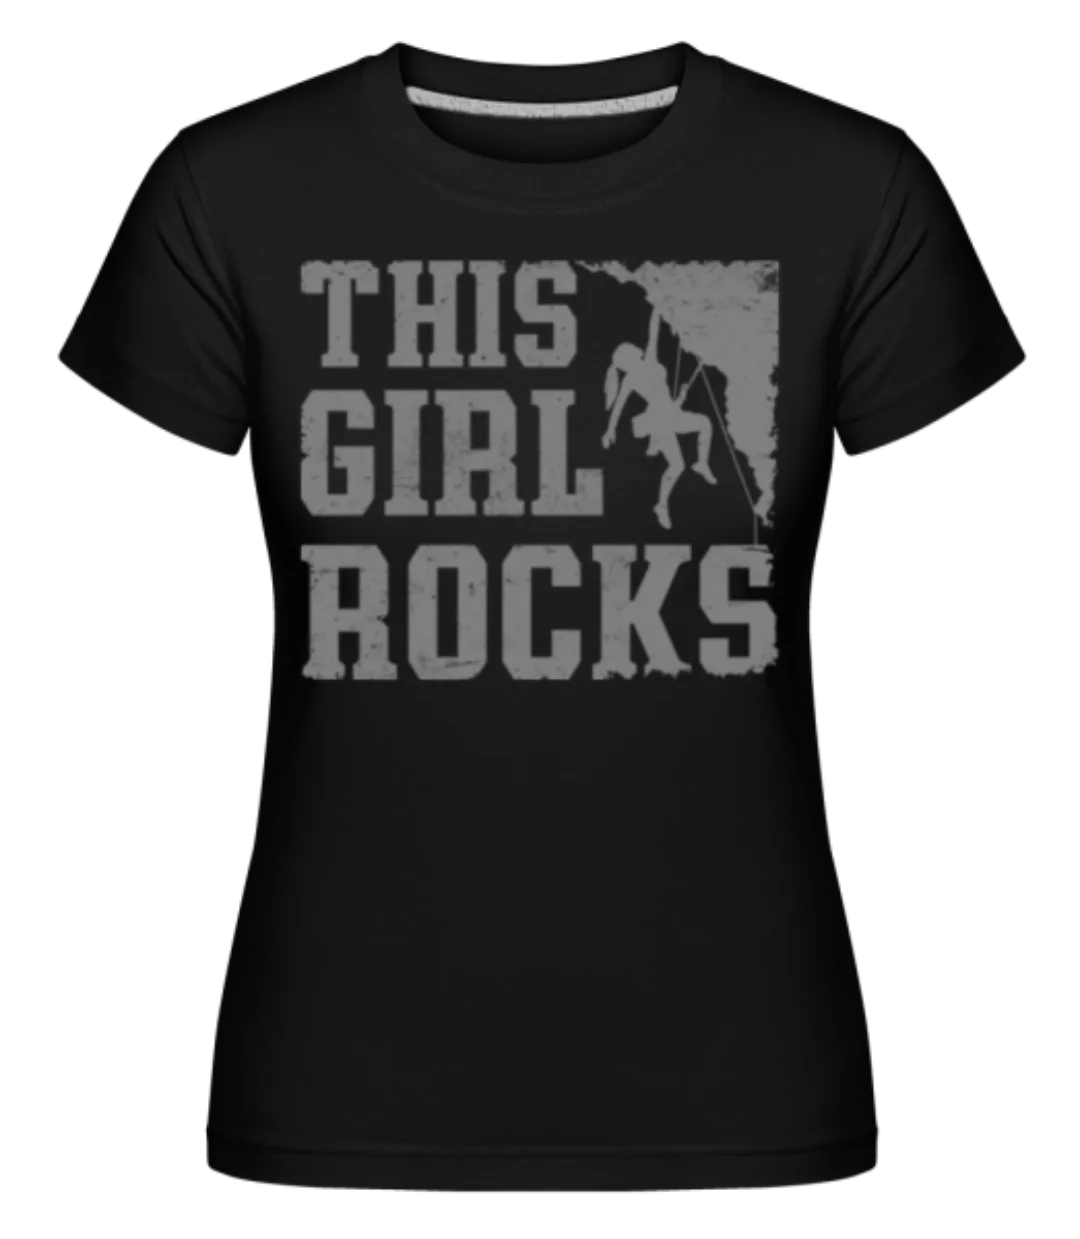 This Girl Rocks · Shirtinator Frauen T-Shirt günstig online kaufen